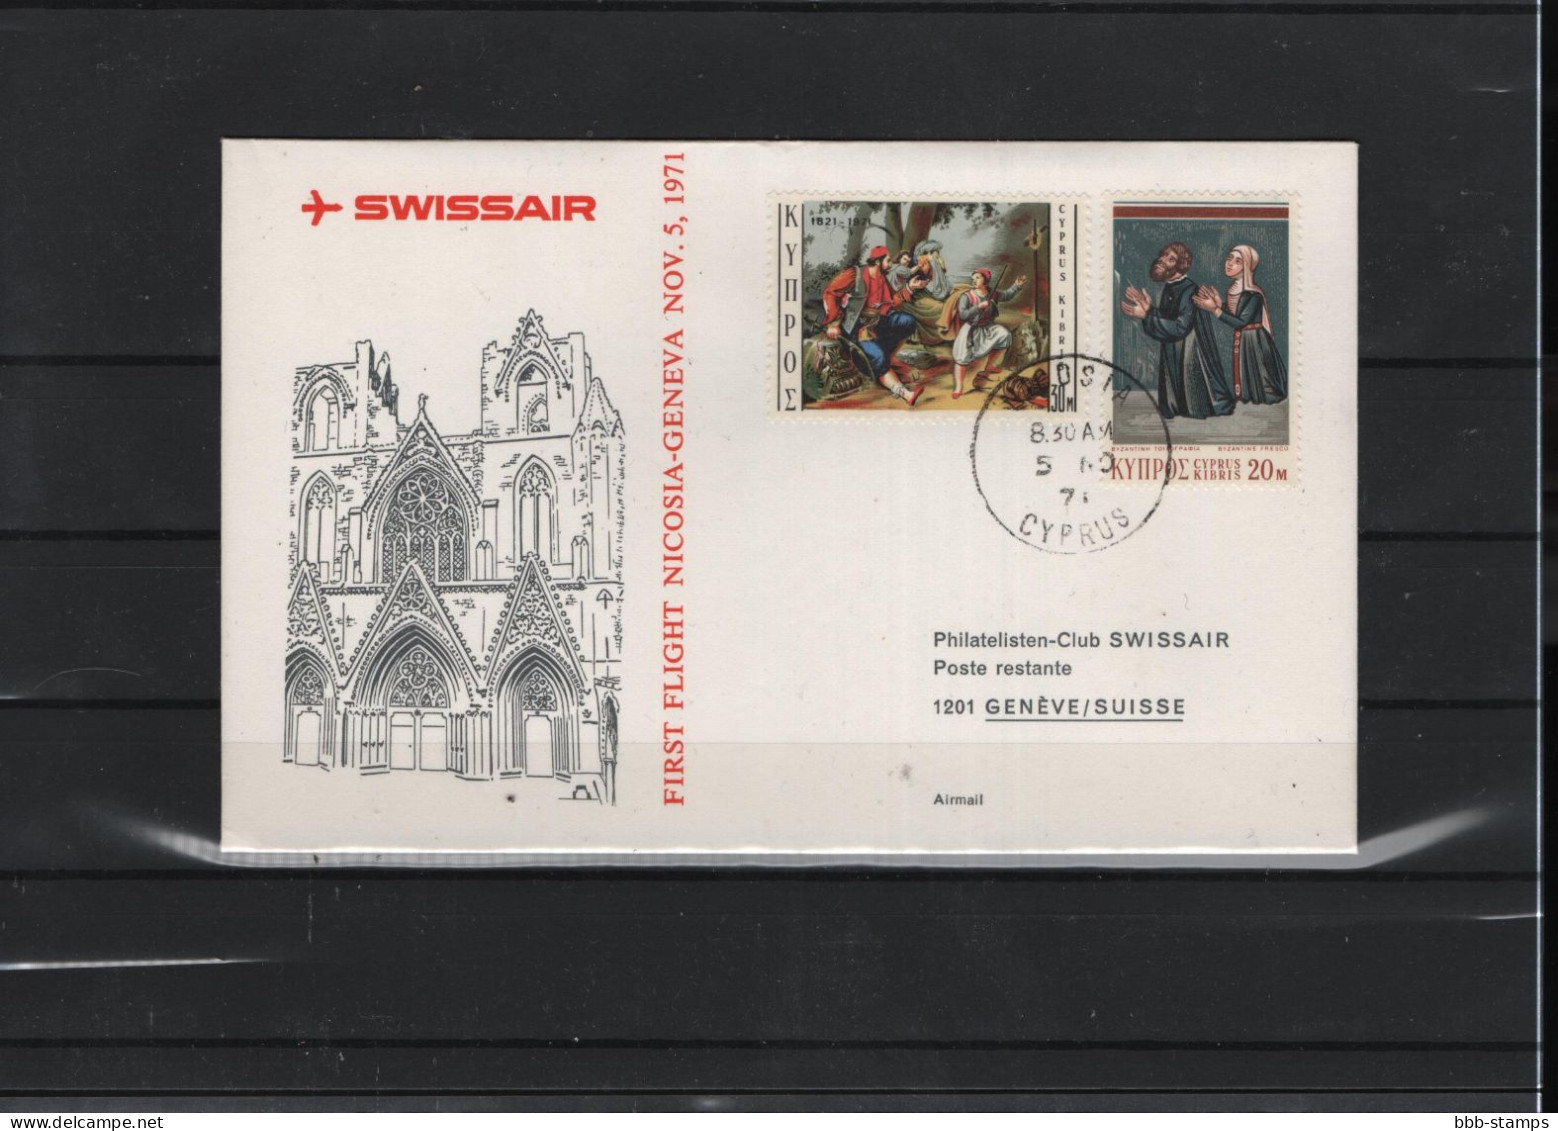 Schweiz Luftpost FFC Swissair  5.11.1971 - First Flight Covers